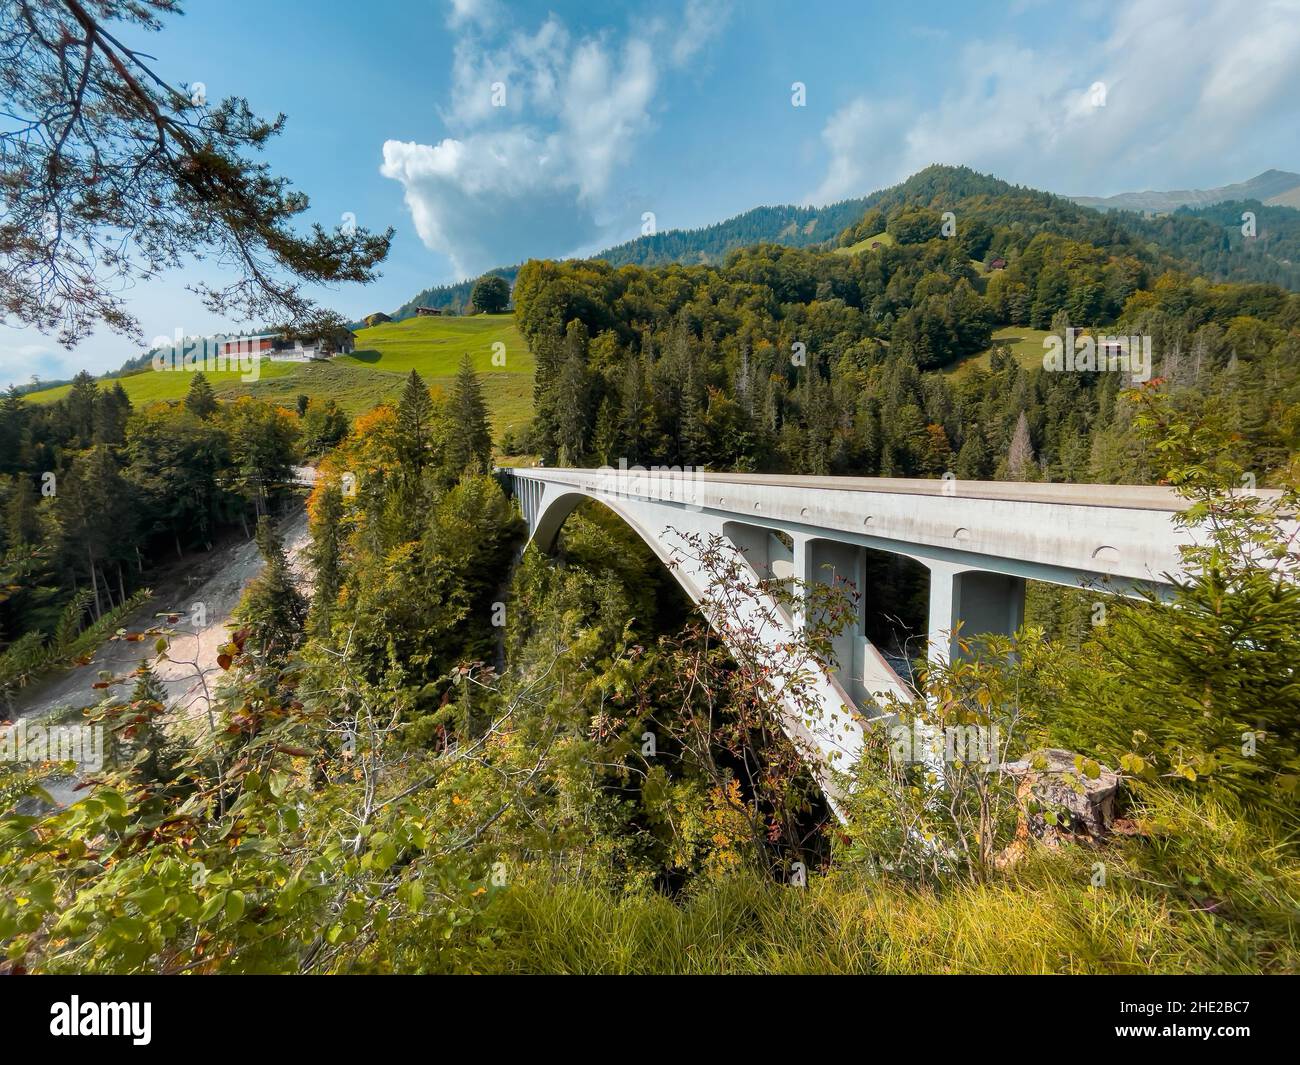 Schiers, Suisse - 27 septembre 2021 : célèbre site historique international de génie civil, pont Salginatobel, arche en béton armé brid Banque D'Images